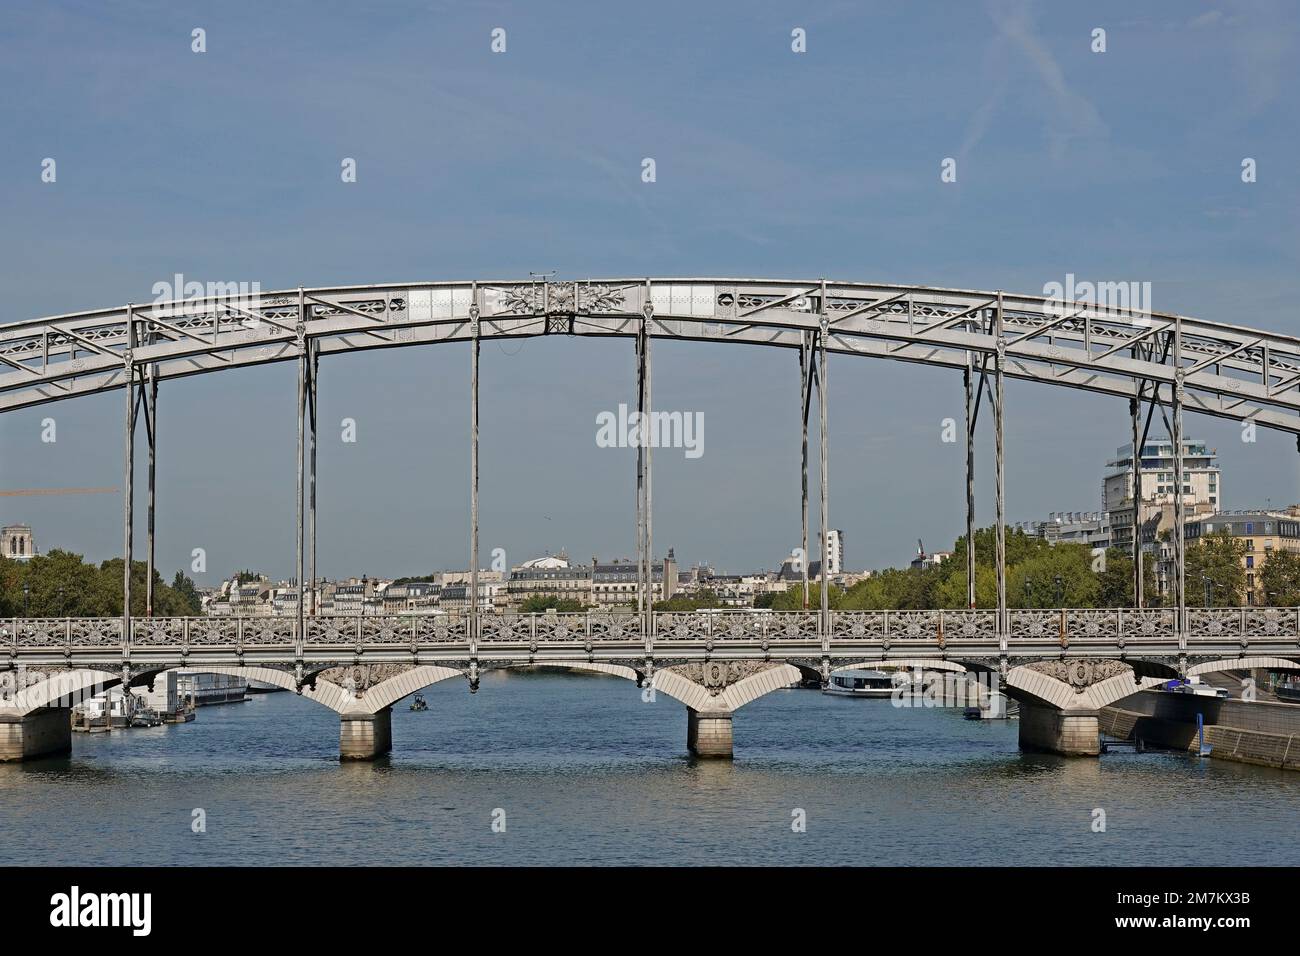 Frankreich, Paris, Viaduc d'Austerlitz (Austerlitz Viaduct) ist eine einstöckige Eisenbahnbrücke mit Stahlbogen, die die seine Photo kreuzt © Fabio Mazzarella/Si Stockfoto